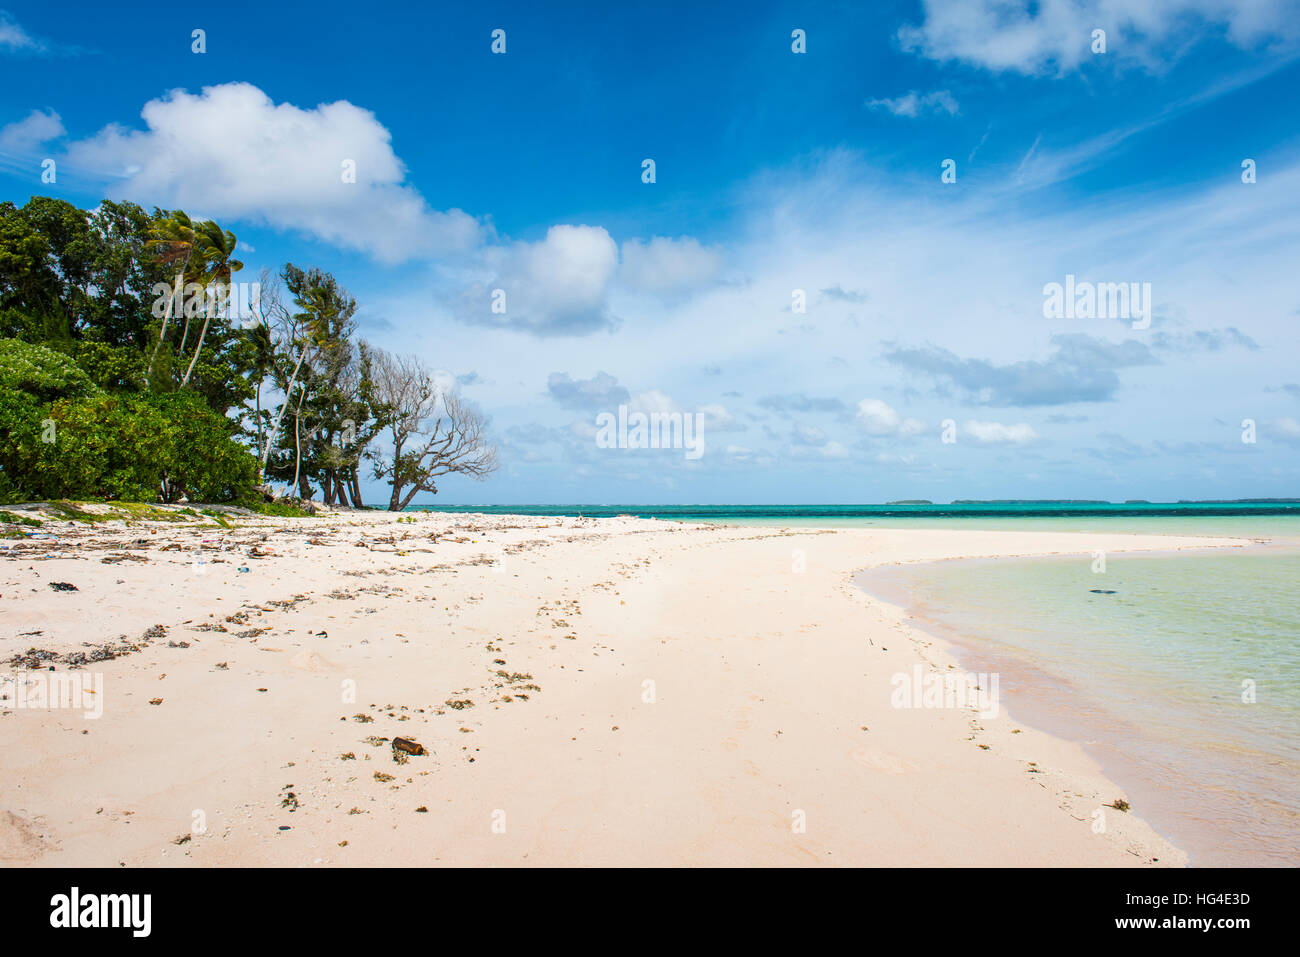 Arena blanca y agua turquesa a Laura (Lowrah) playa, el atolón de Majuro, Majuro, Islas Marshall, Pacífico Sur Foto de stock